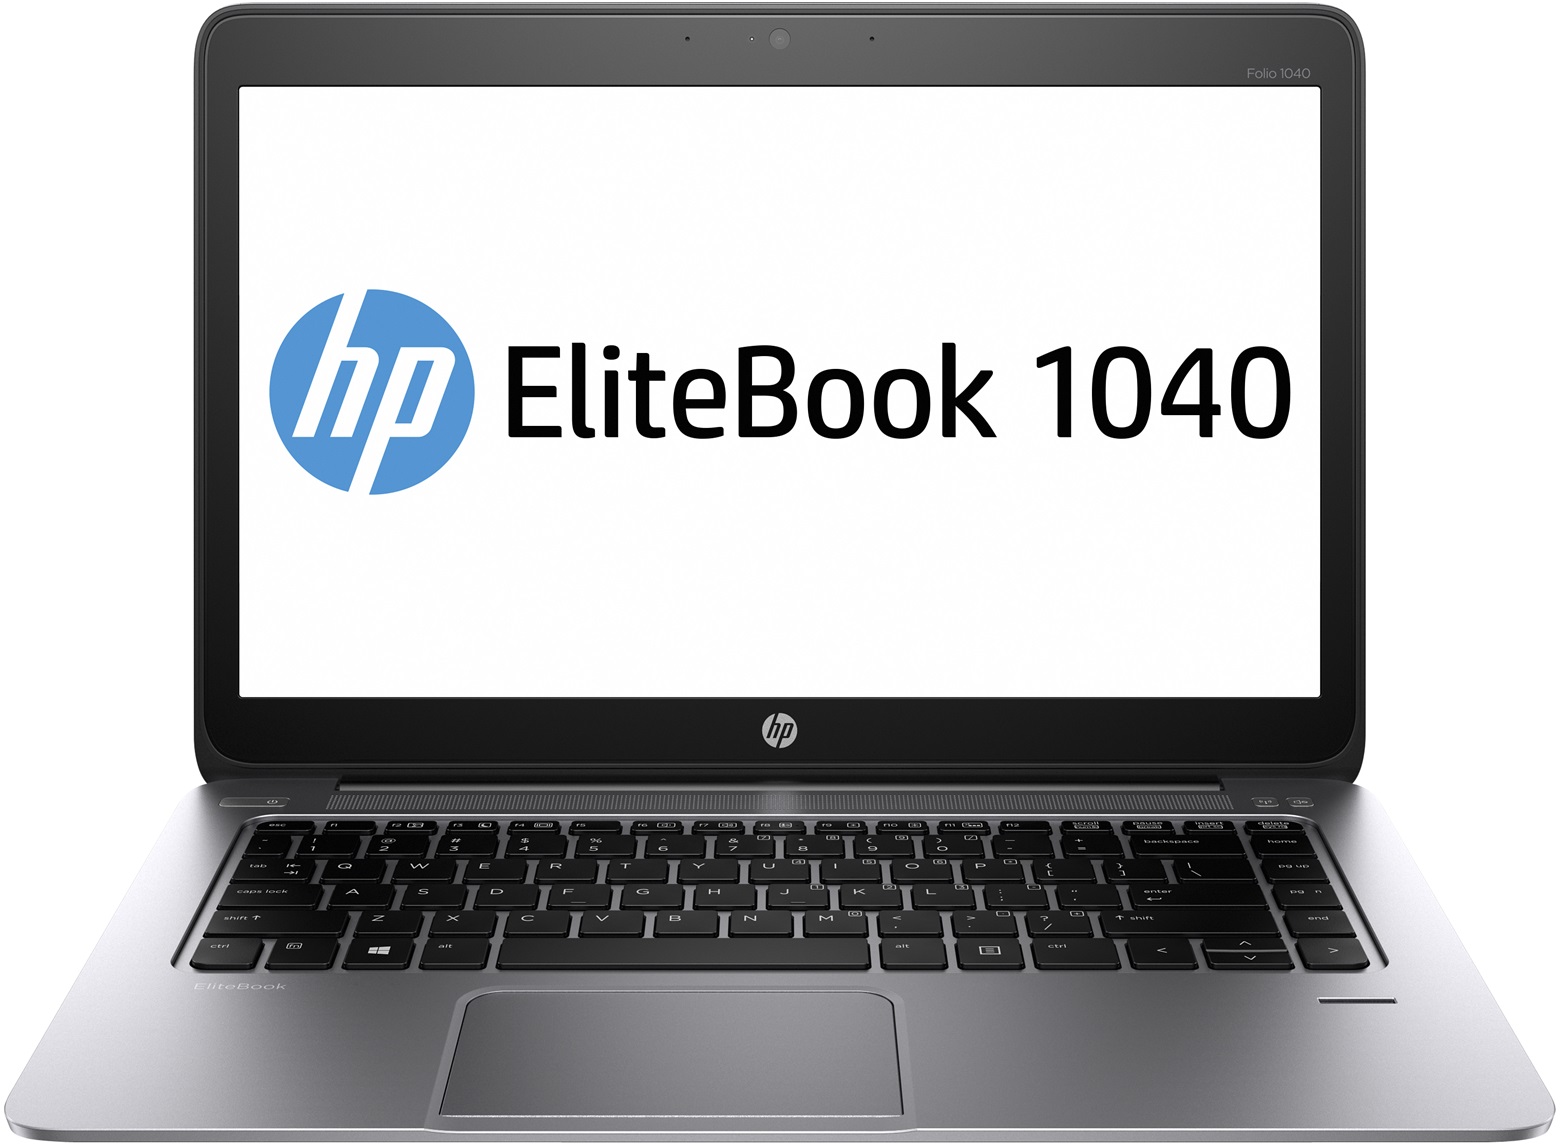 HP Elite Folio 1040 G1